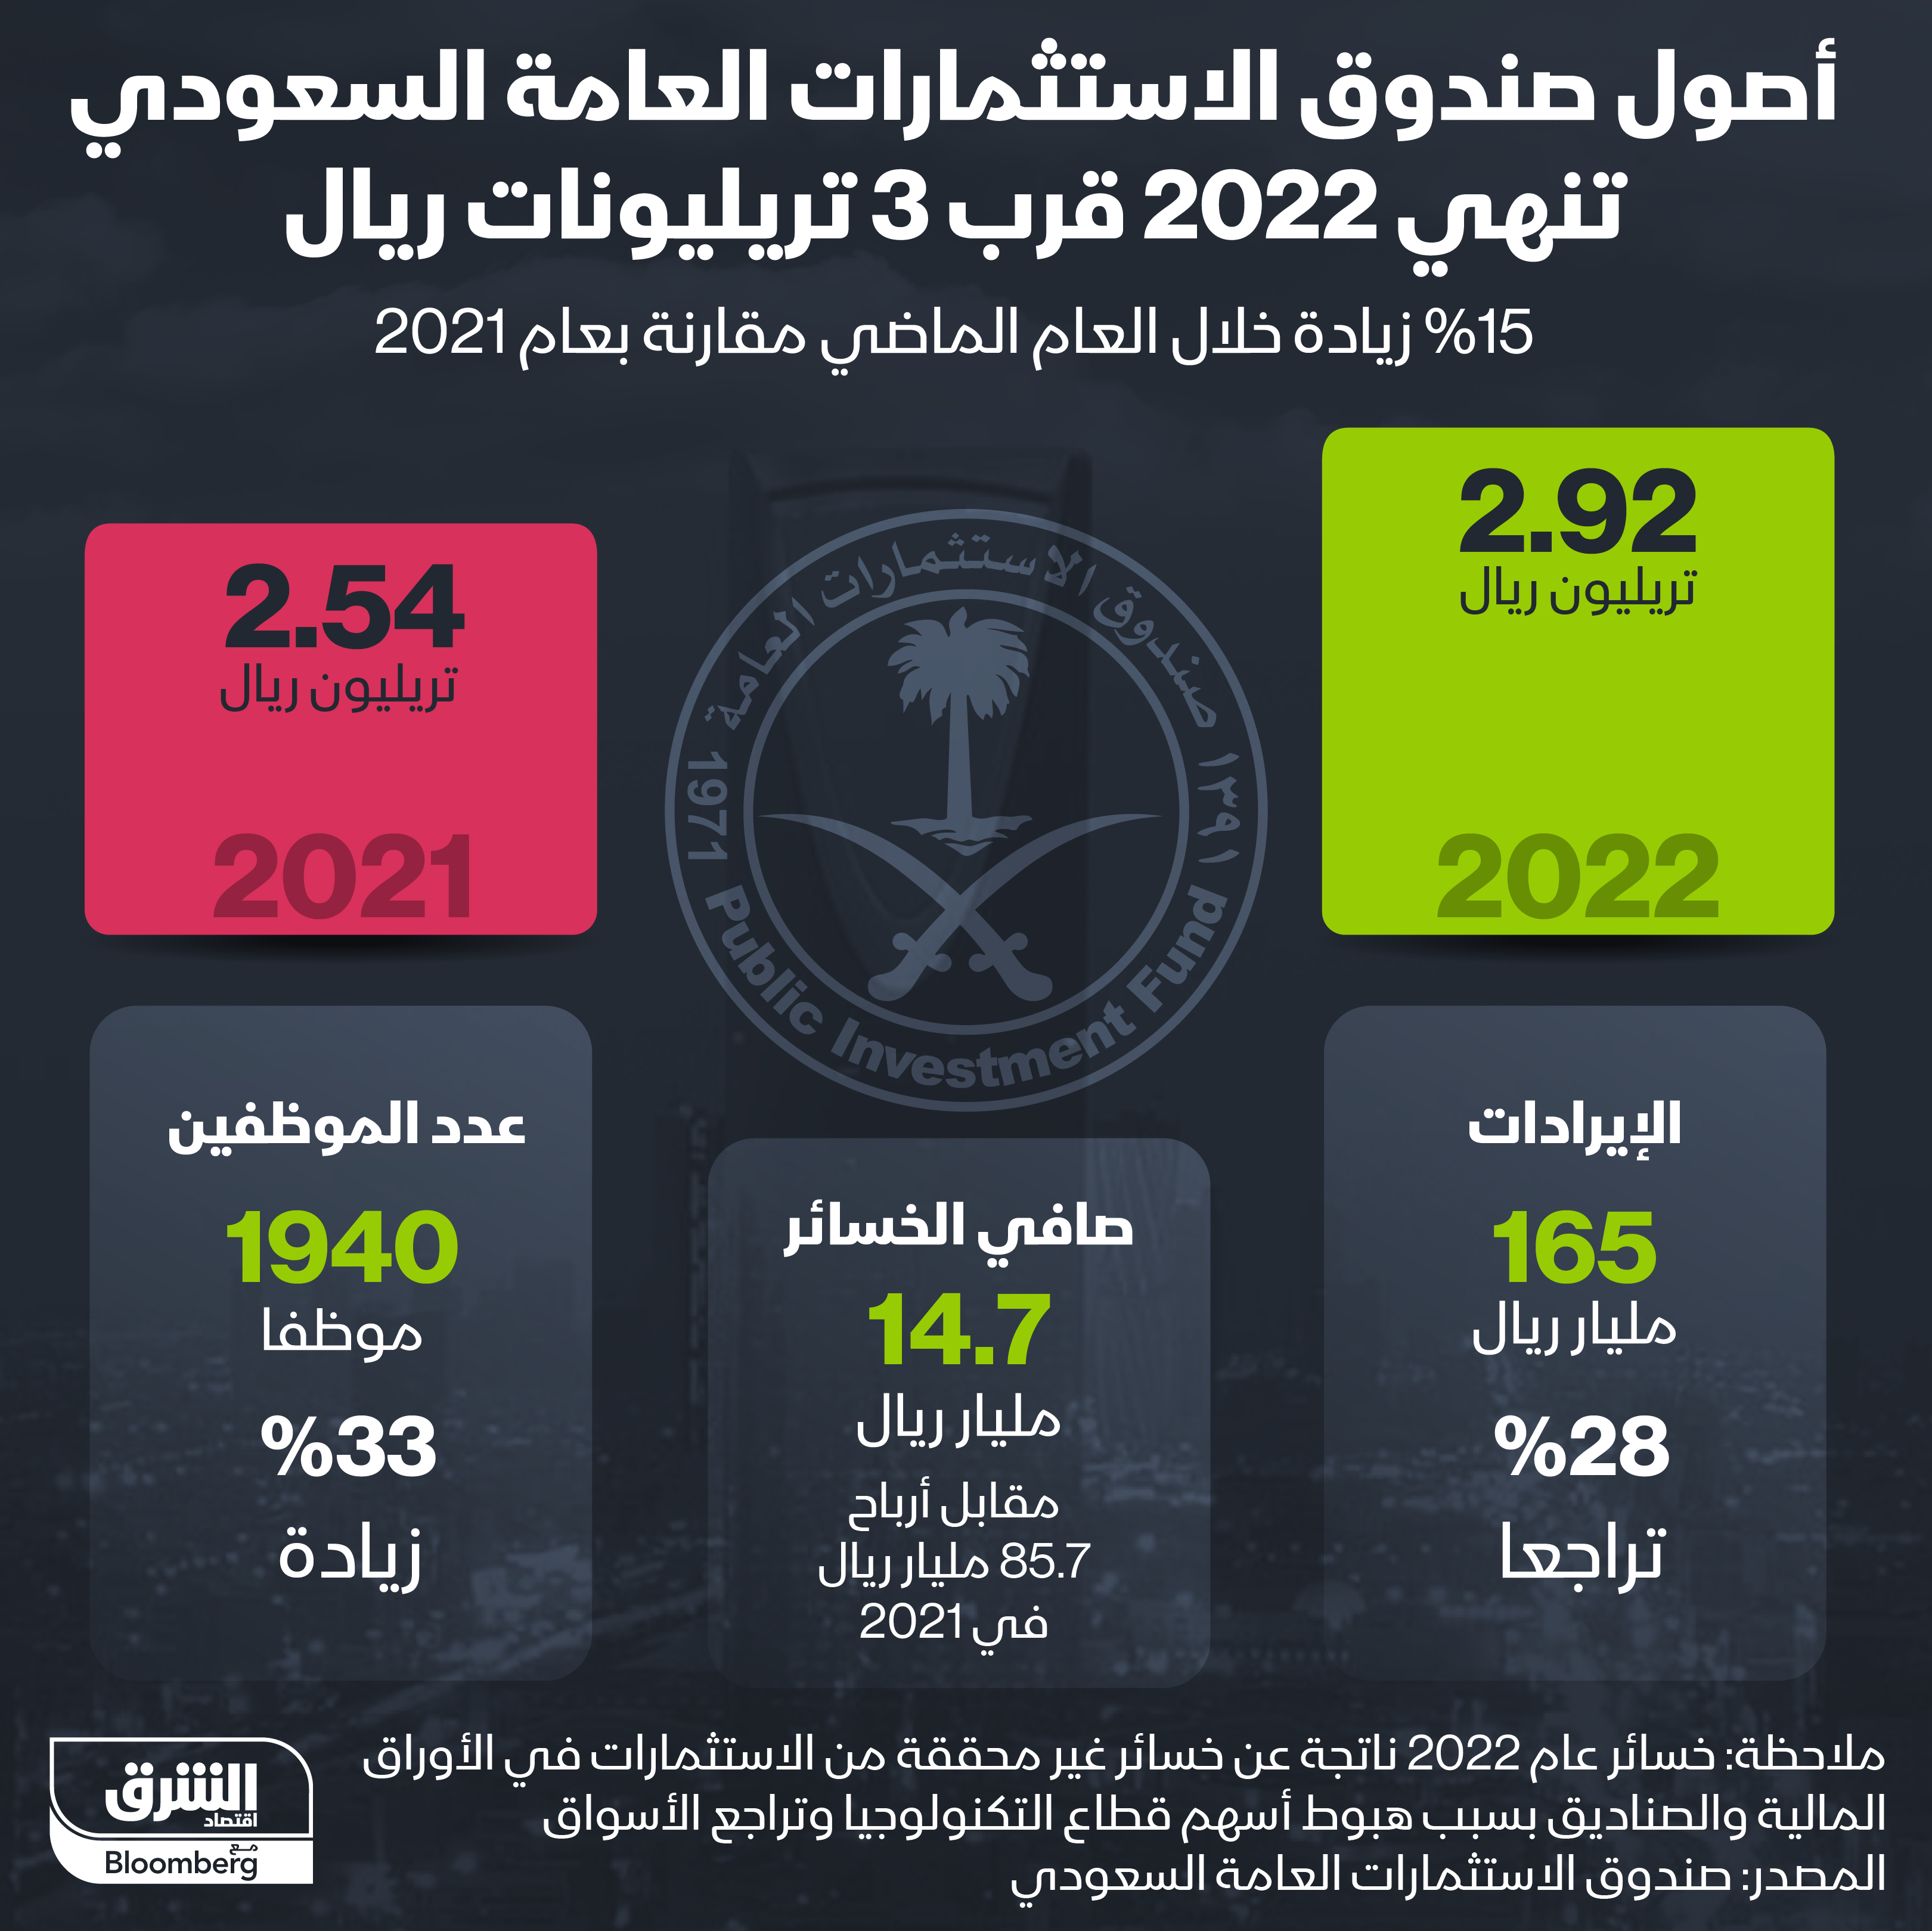 أصول صندوق الاستثمارات العامة السعودي تقفز في 2022 بنسبة 15% عن العام السابق